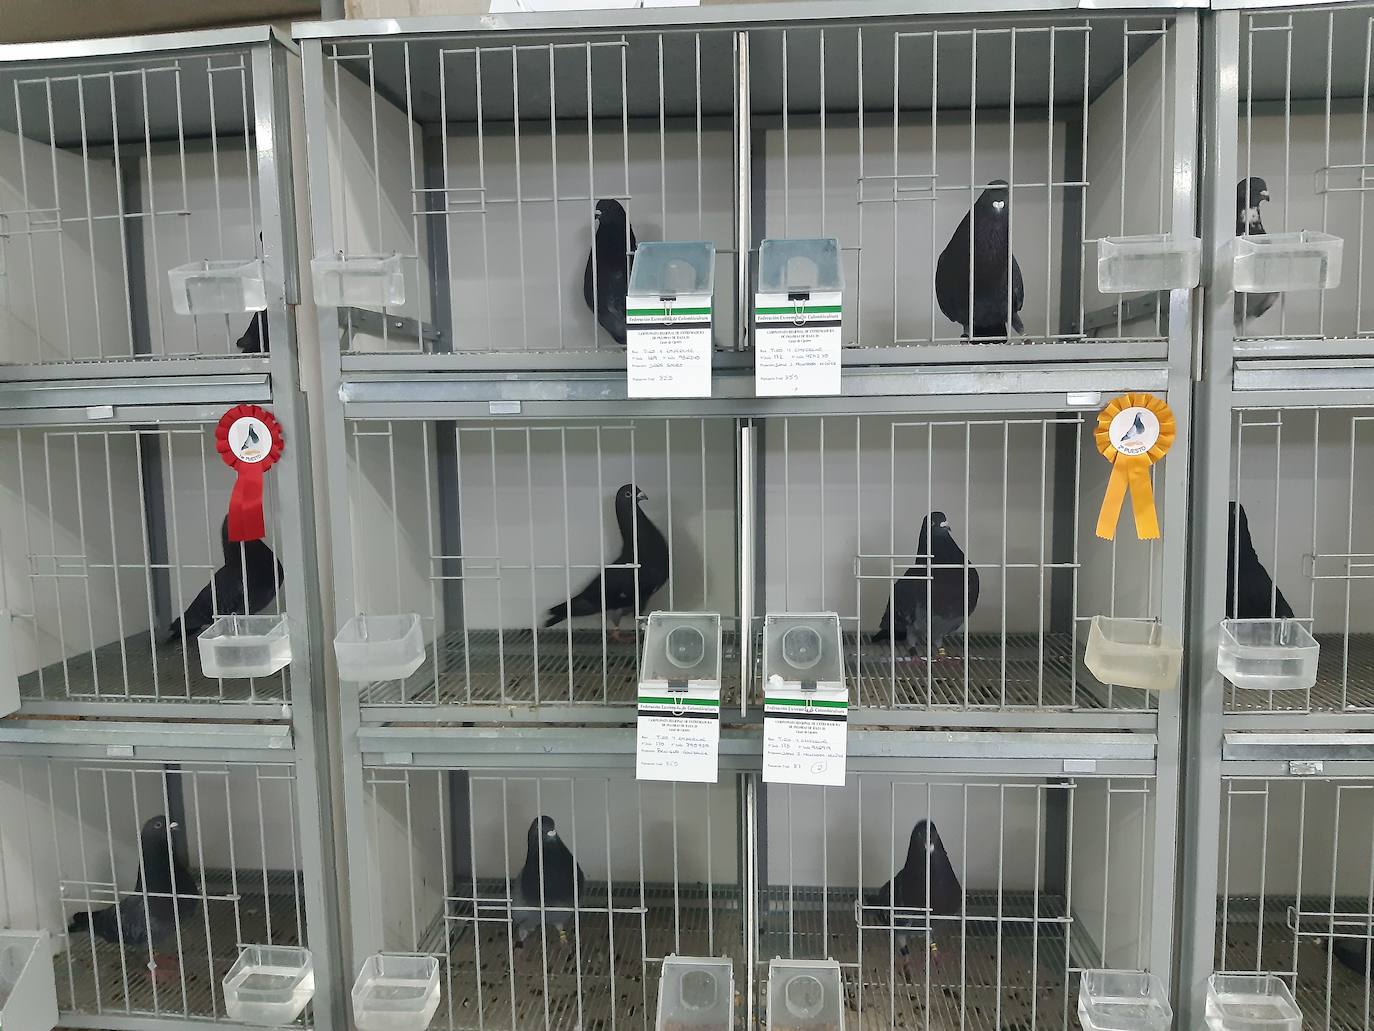 262 palomas participan en el Concurso regional que se celebra este fin de semana en Casar de Cáceres